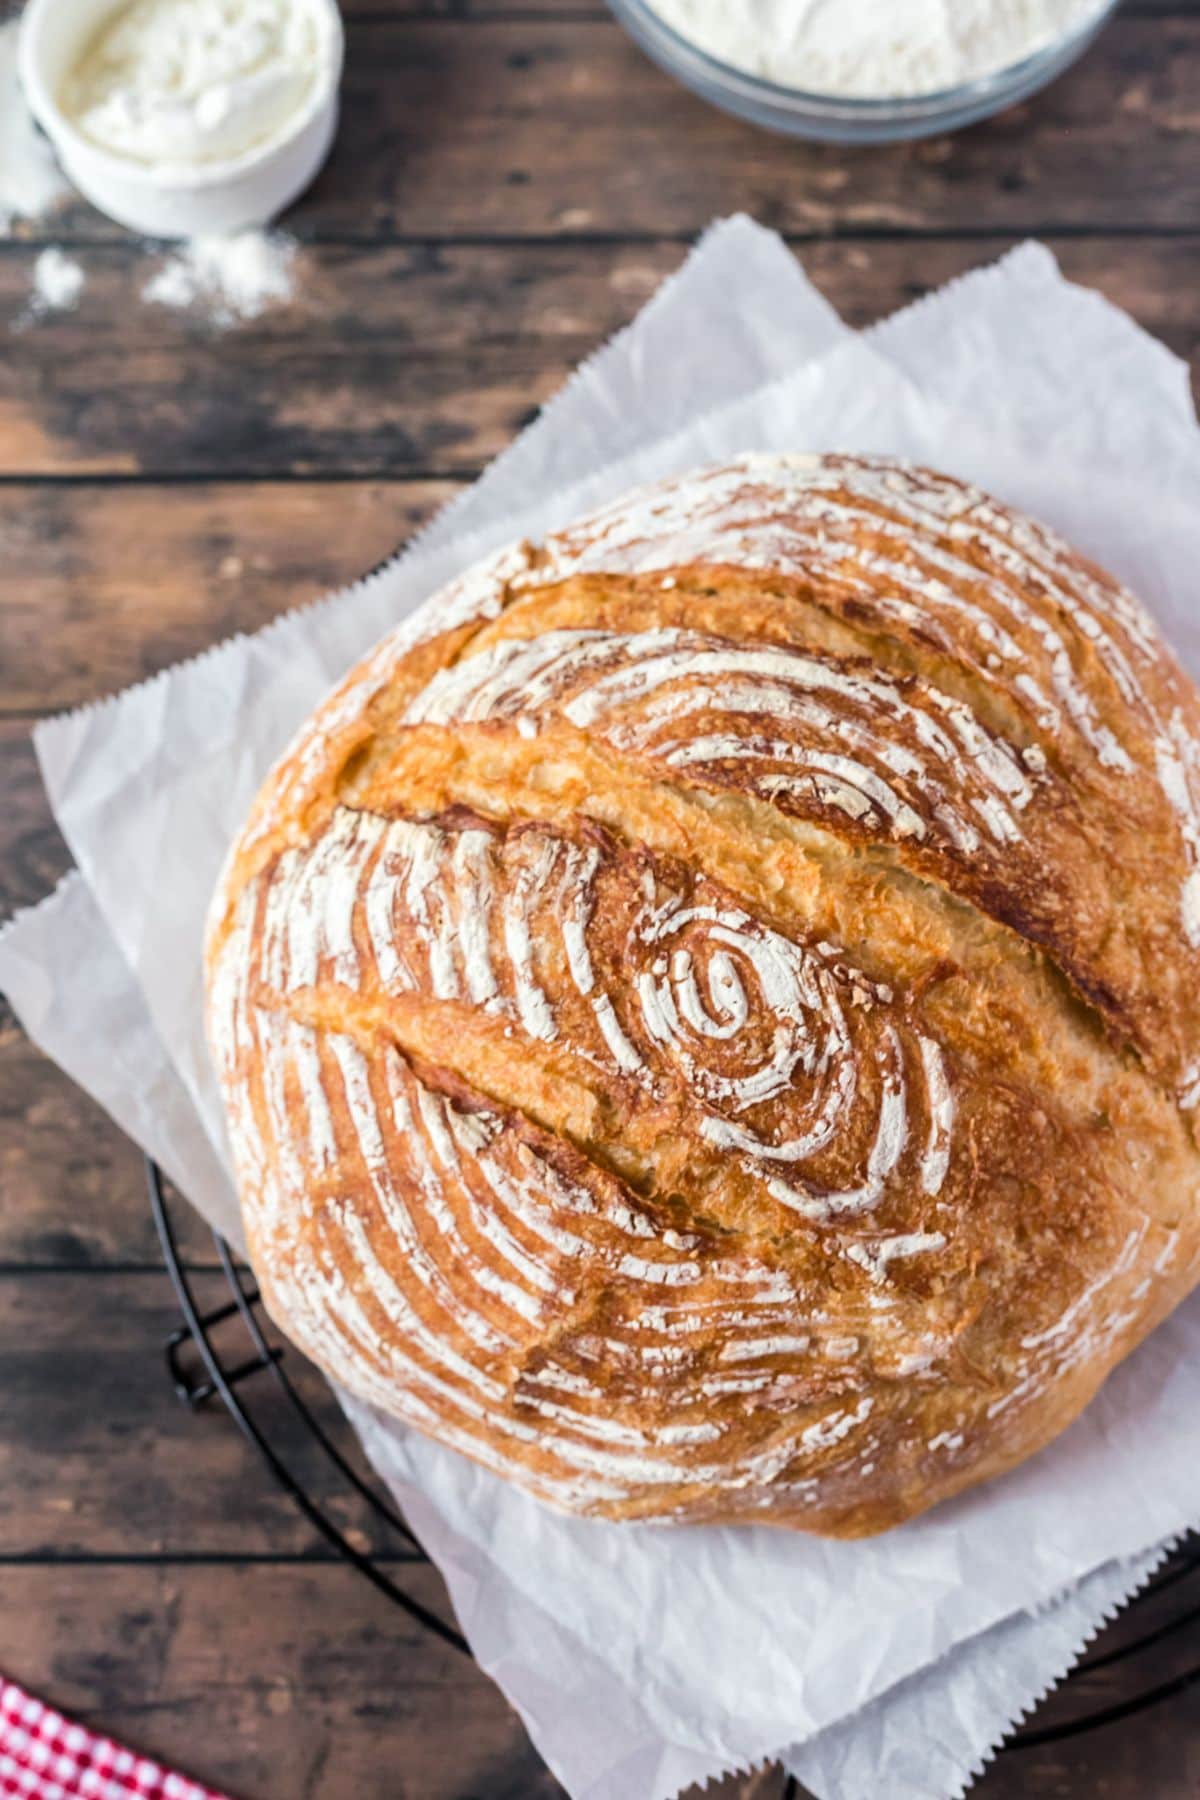 https://littlechefwithin.com/wp-content/uploads/2023/06/Dutch-Oven-Sourdough-Bread-Round-loaf.jpg